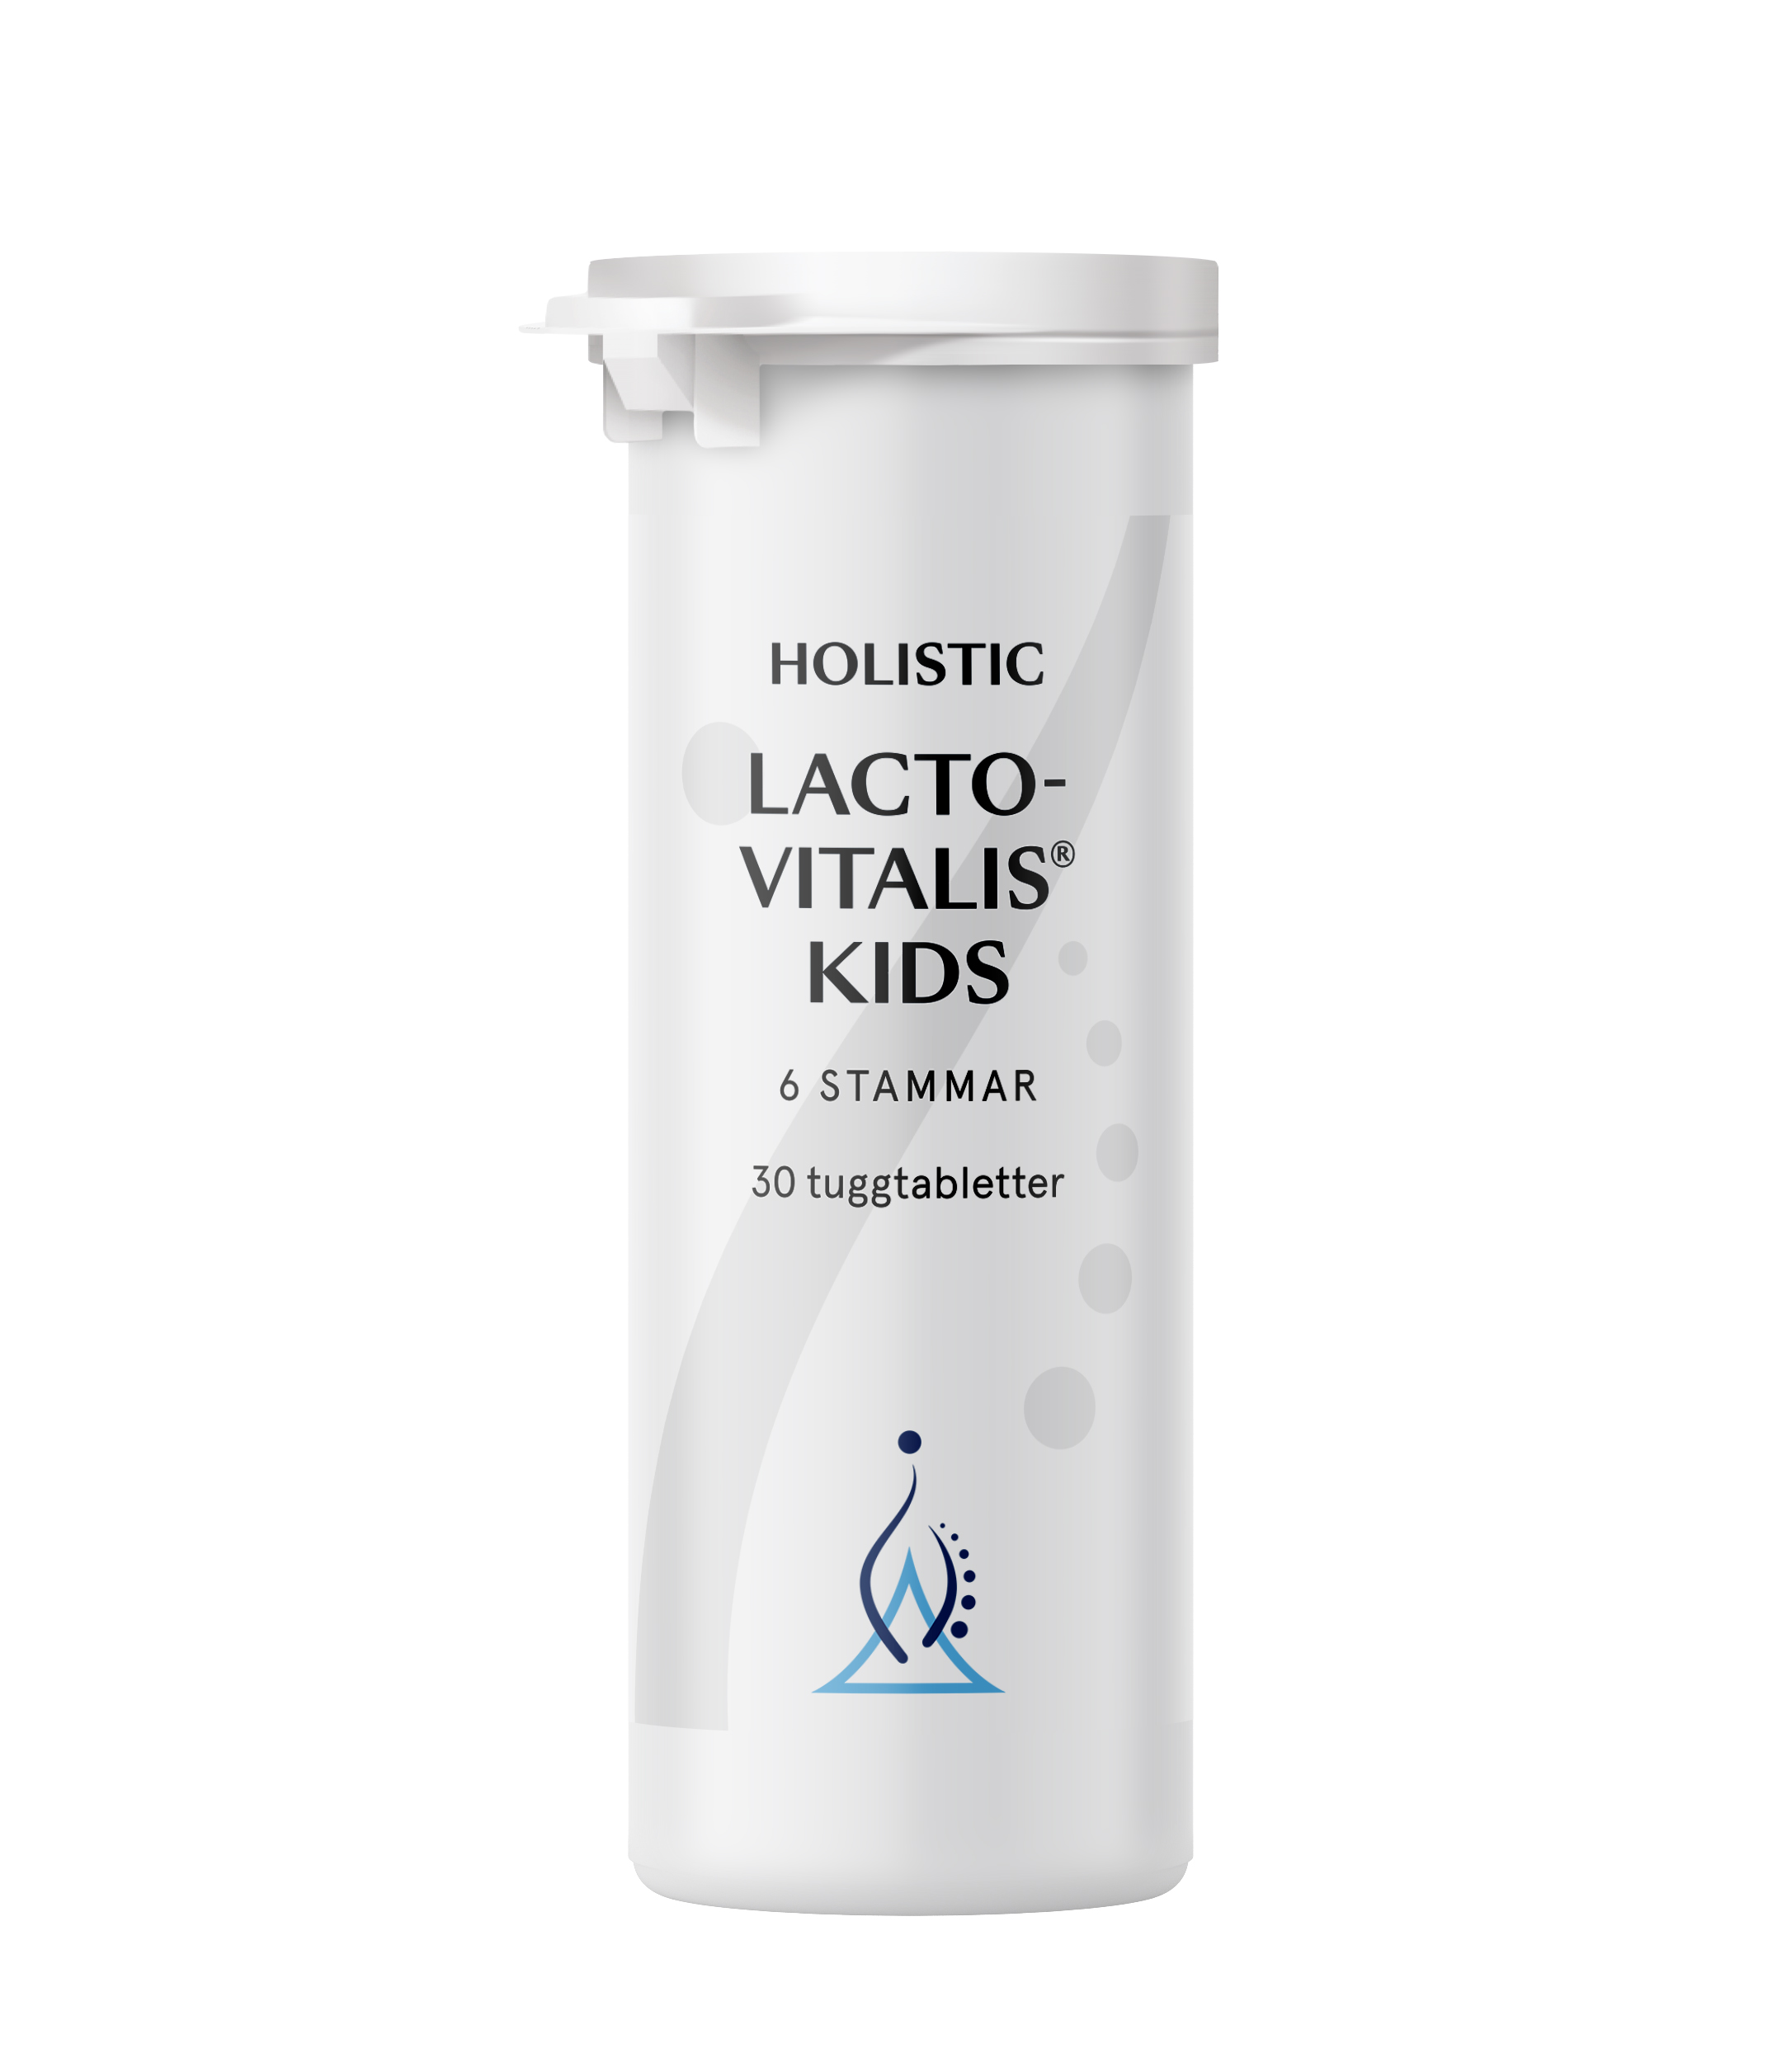 Holistic Lactovitalis® Kids 30 tuggtabletter